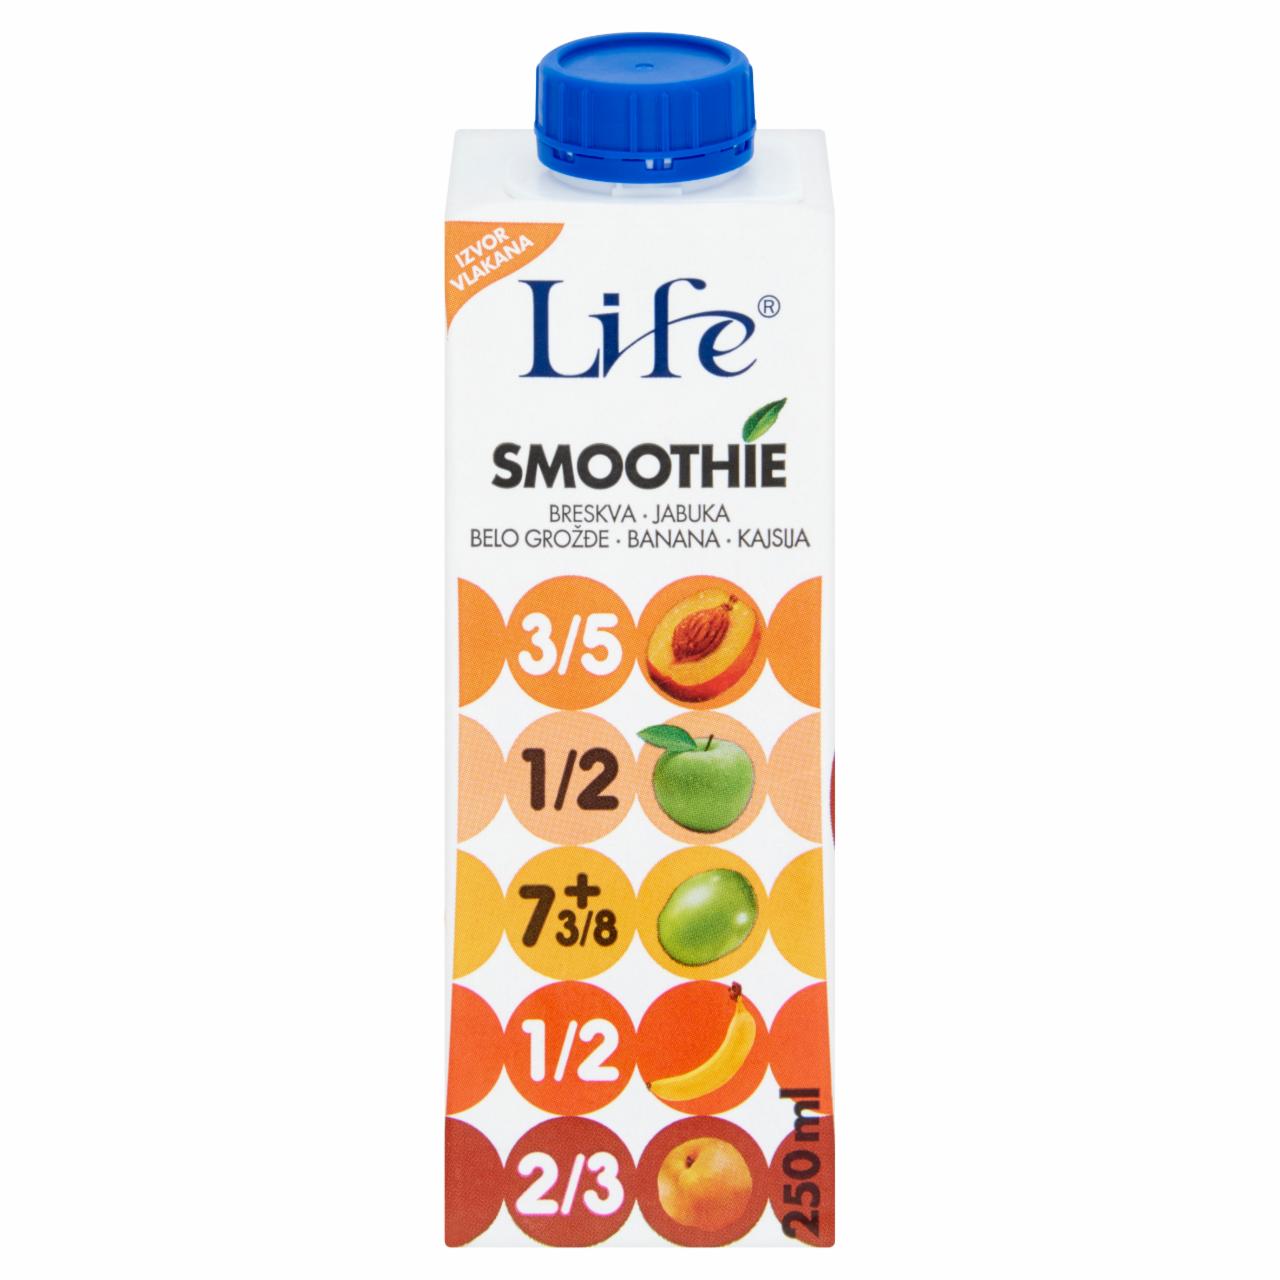 Képek - Life Smoothie rostos őszibarack ital 250 ml